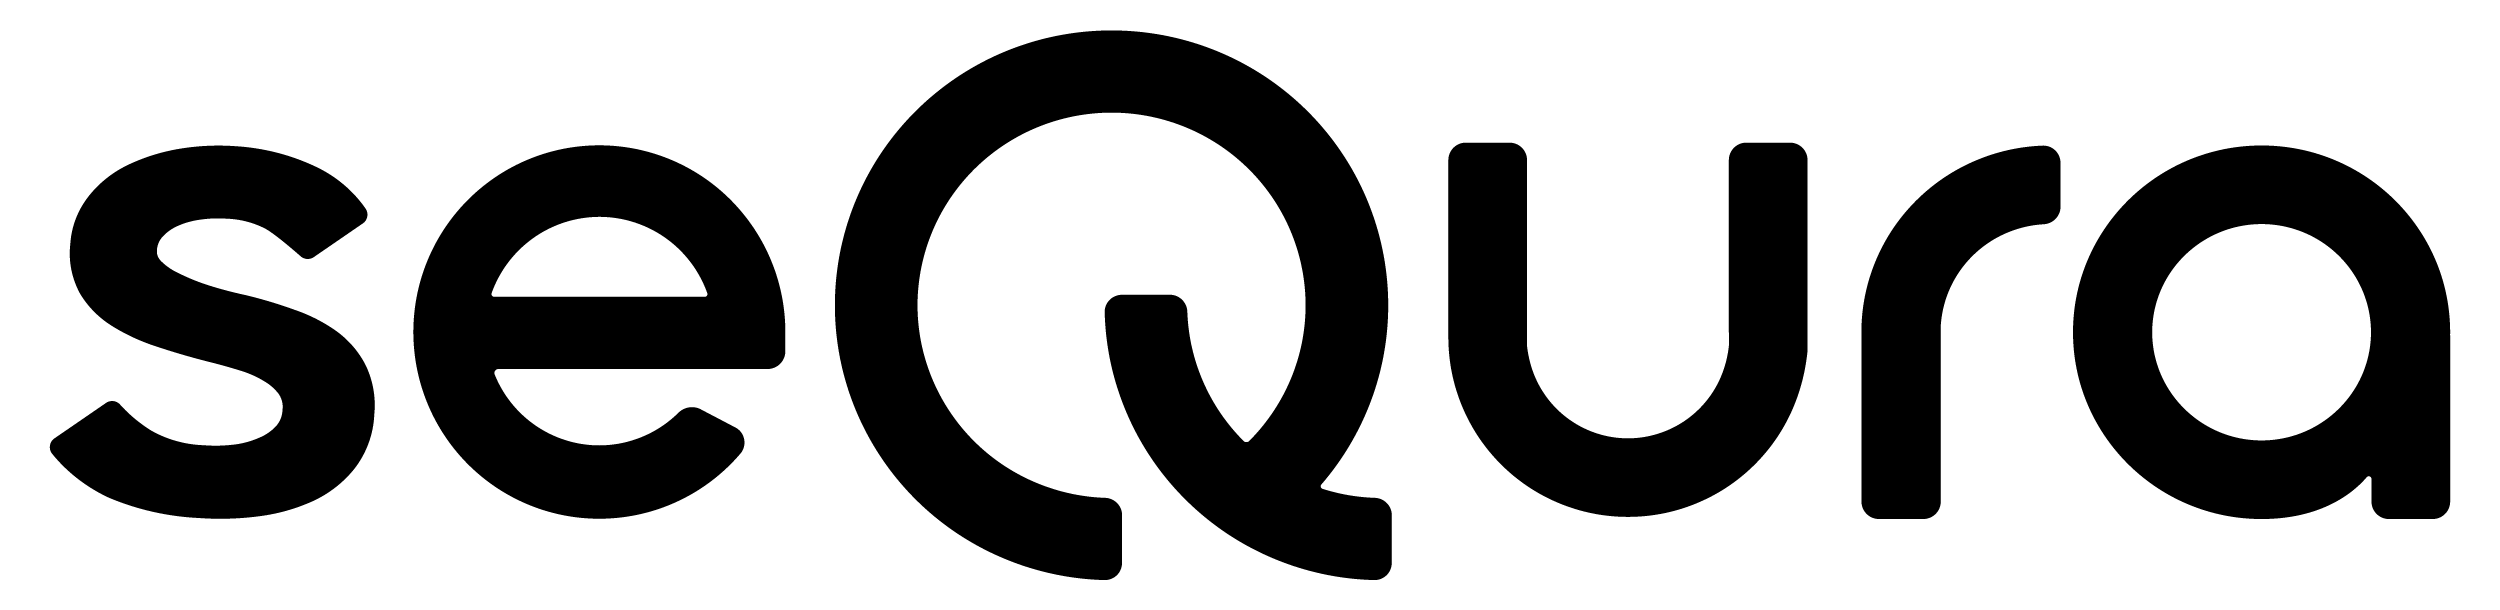 logotipo-seQura-negro.png